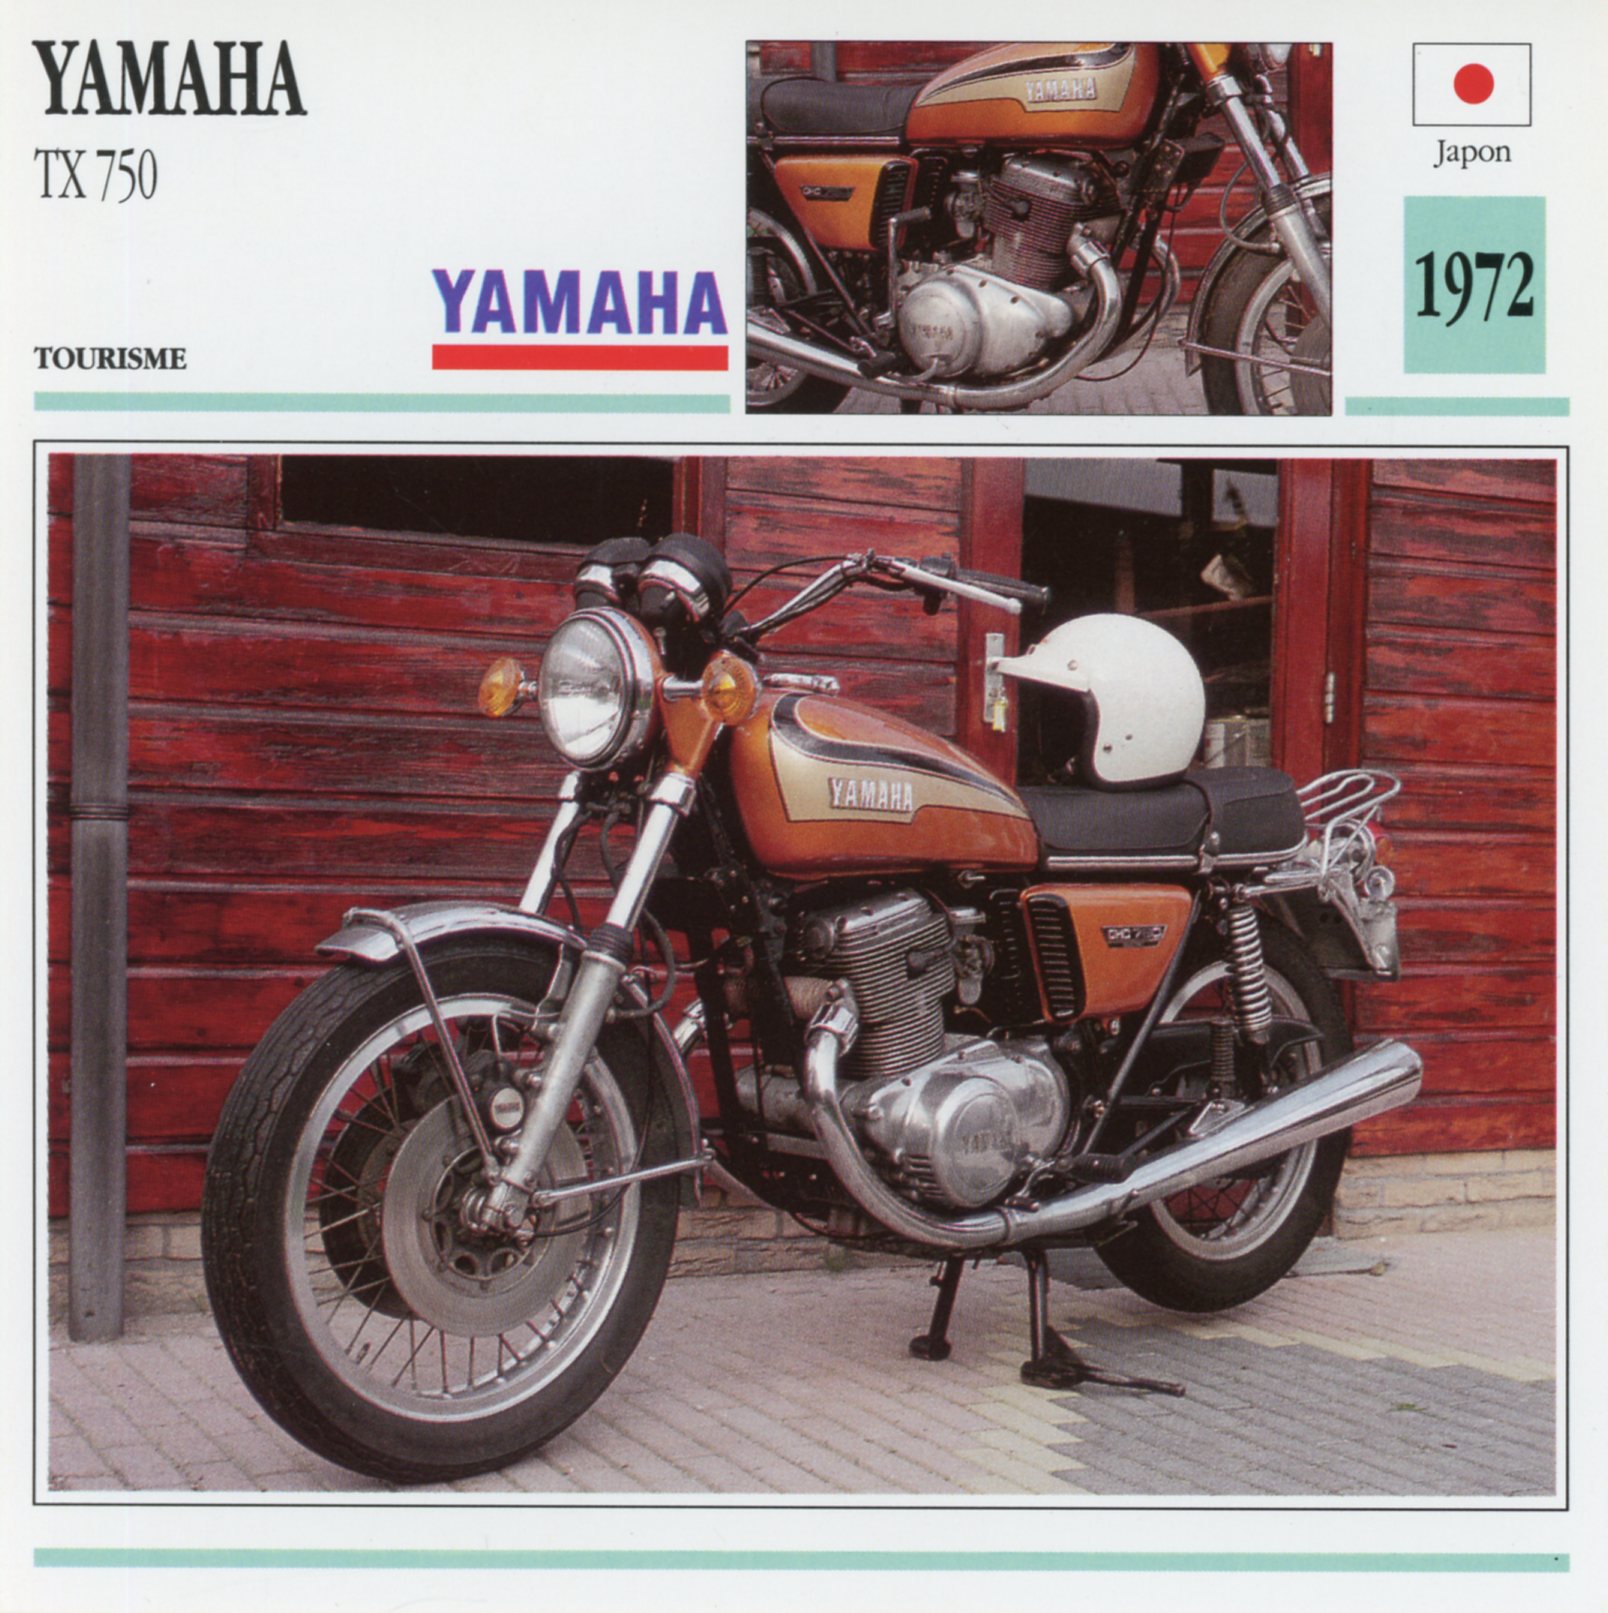 FICHE-MOTO-YAMAHA-TX-750-1972-LEMASTERBROCKERS-littérature-brochure